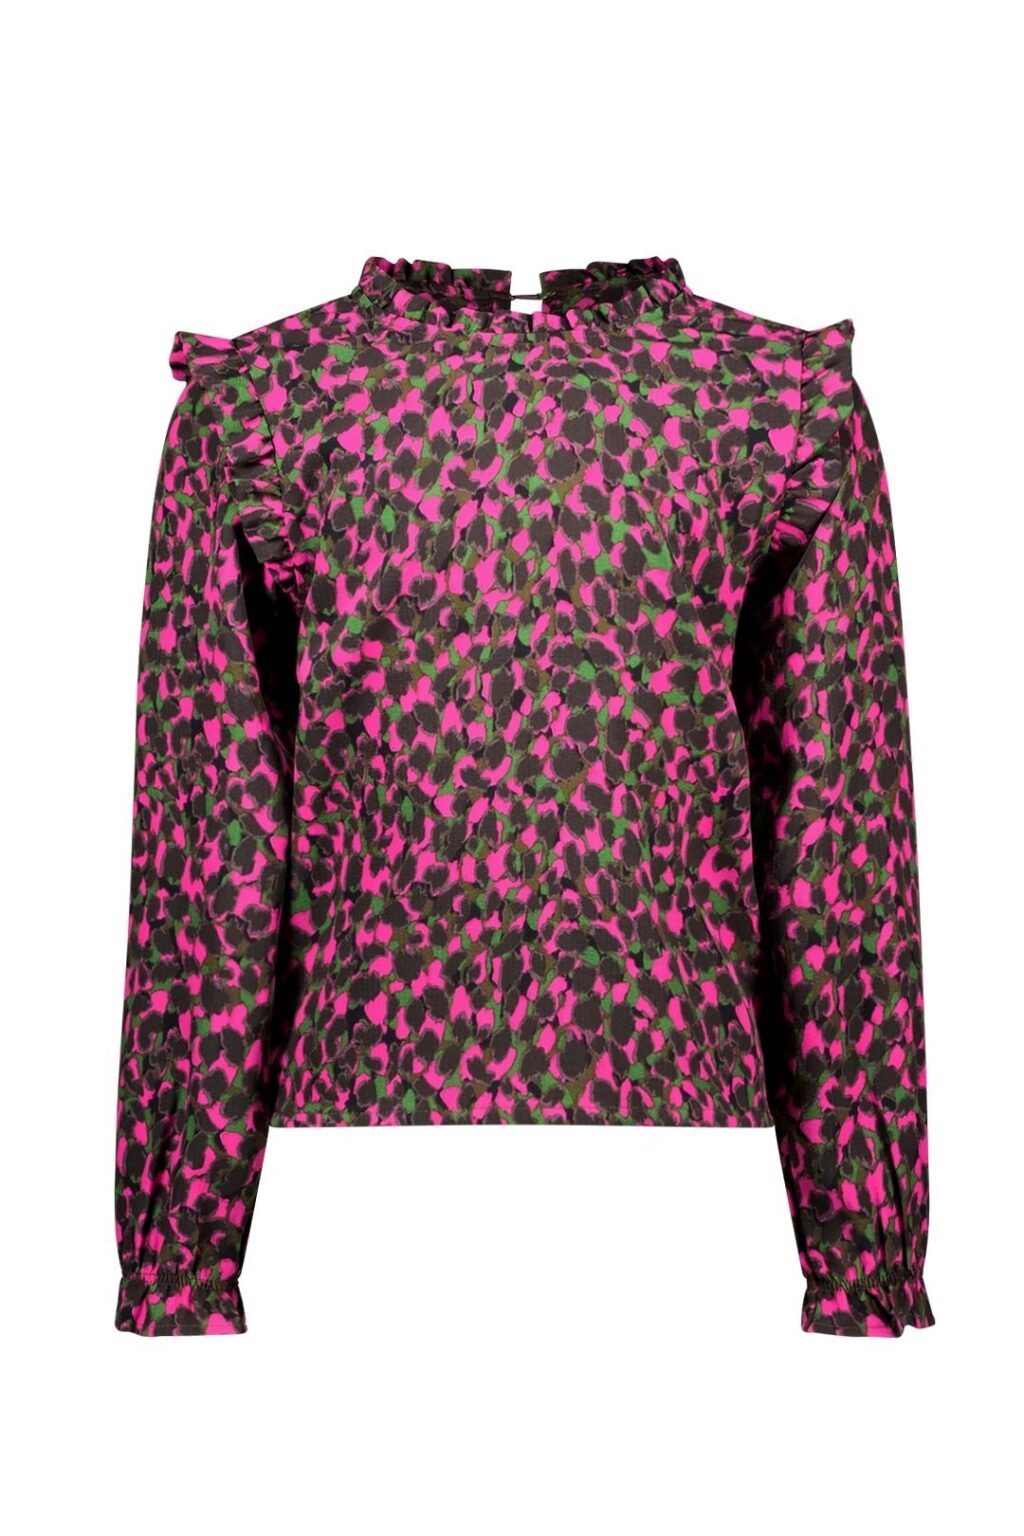 B.Nosy Meisjes blouse stippen roze - Ave - Awesome AOP ~ Spinze.nl